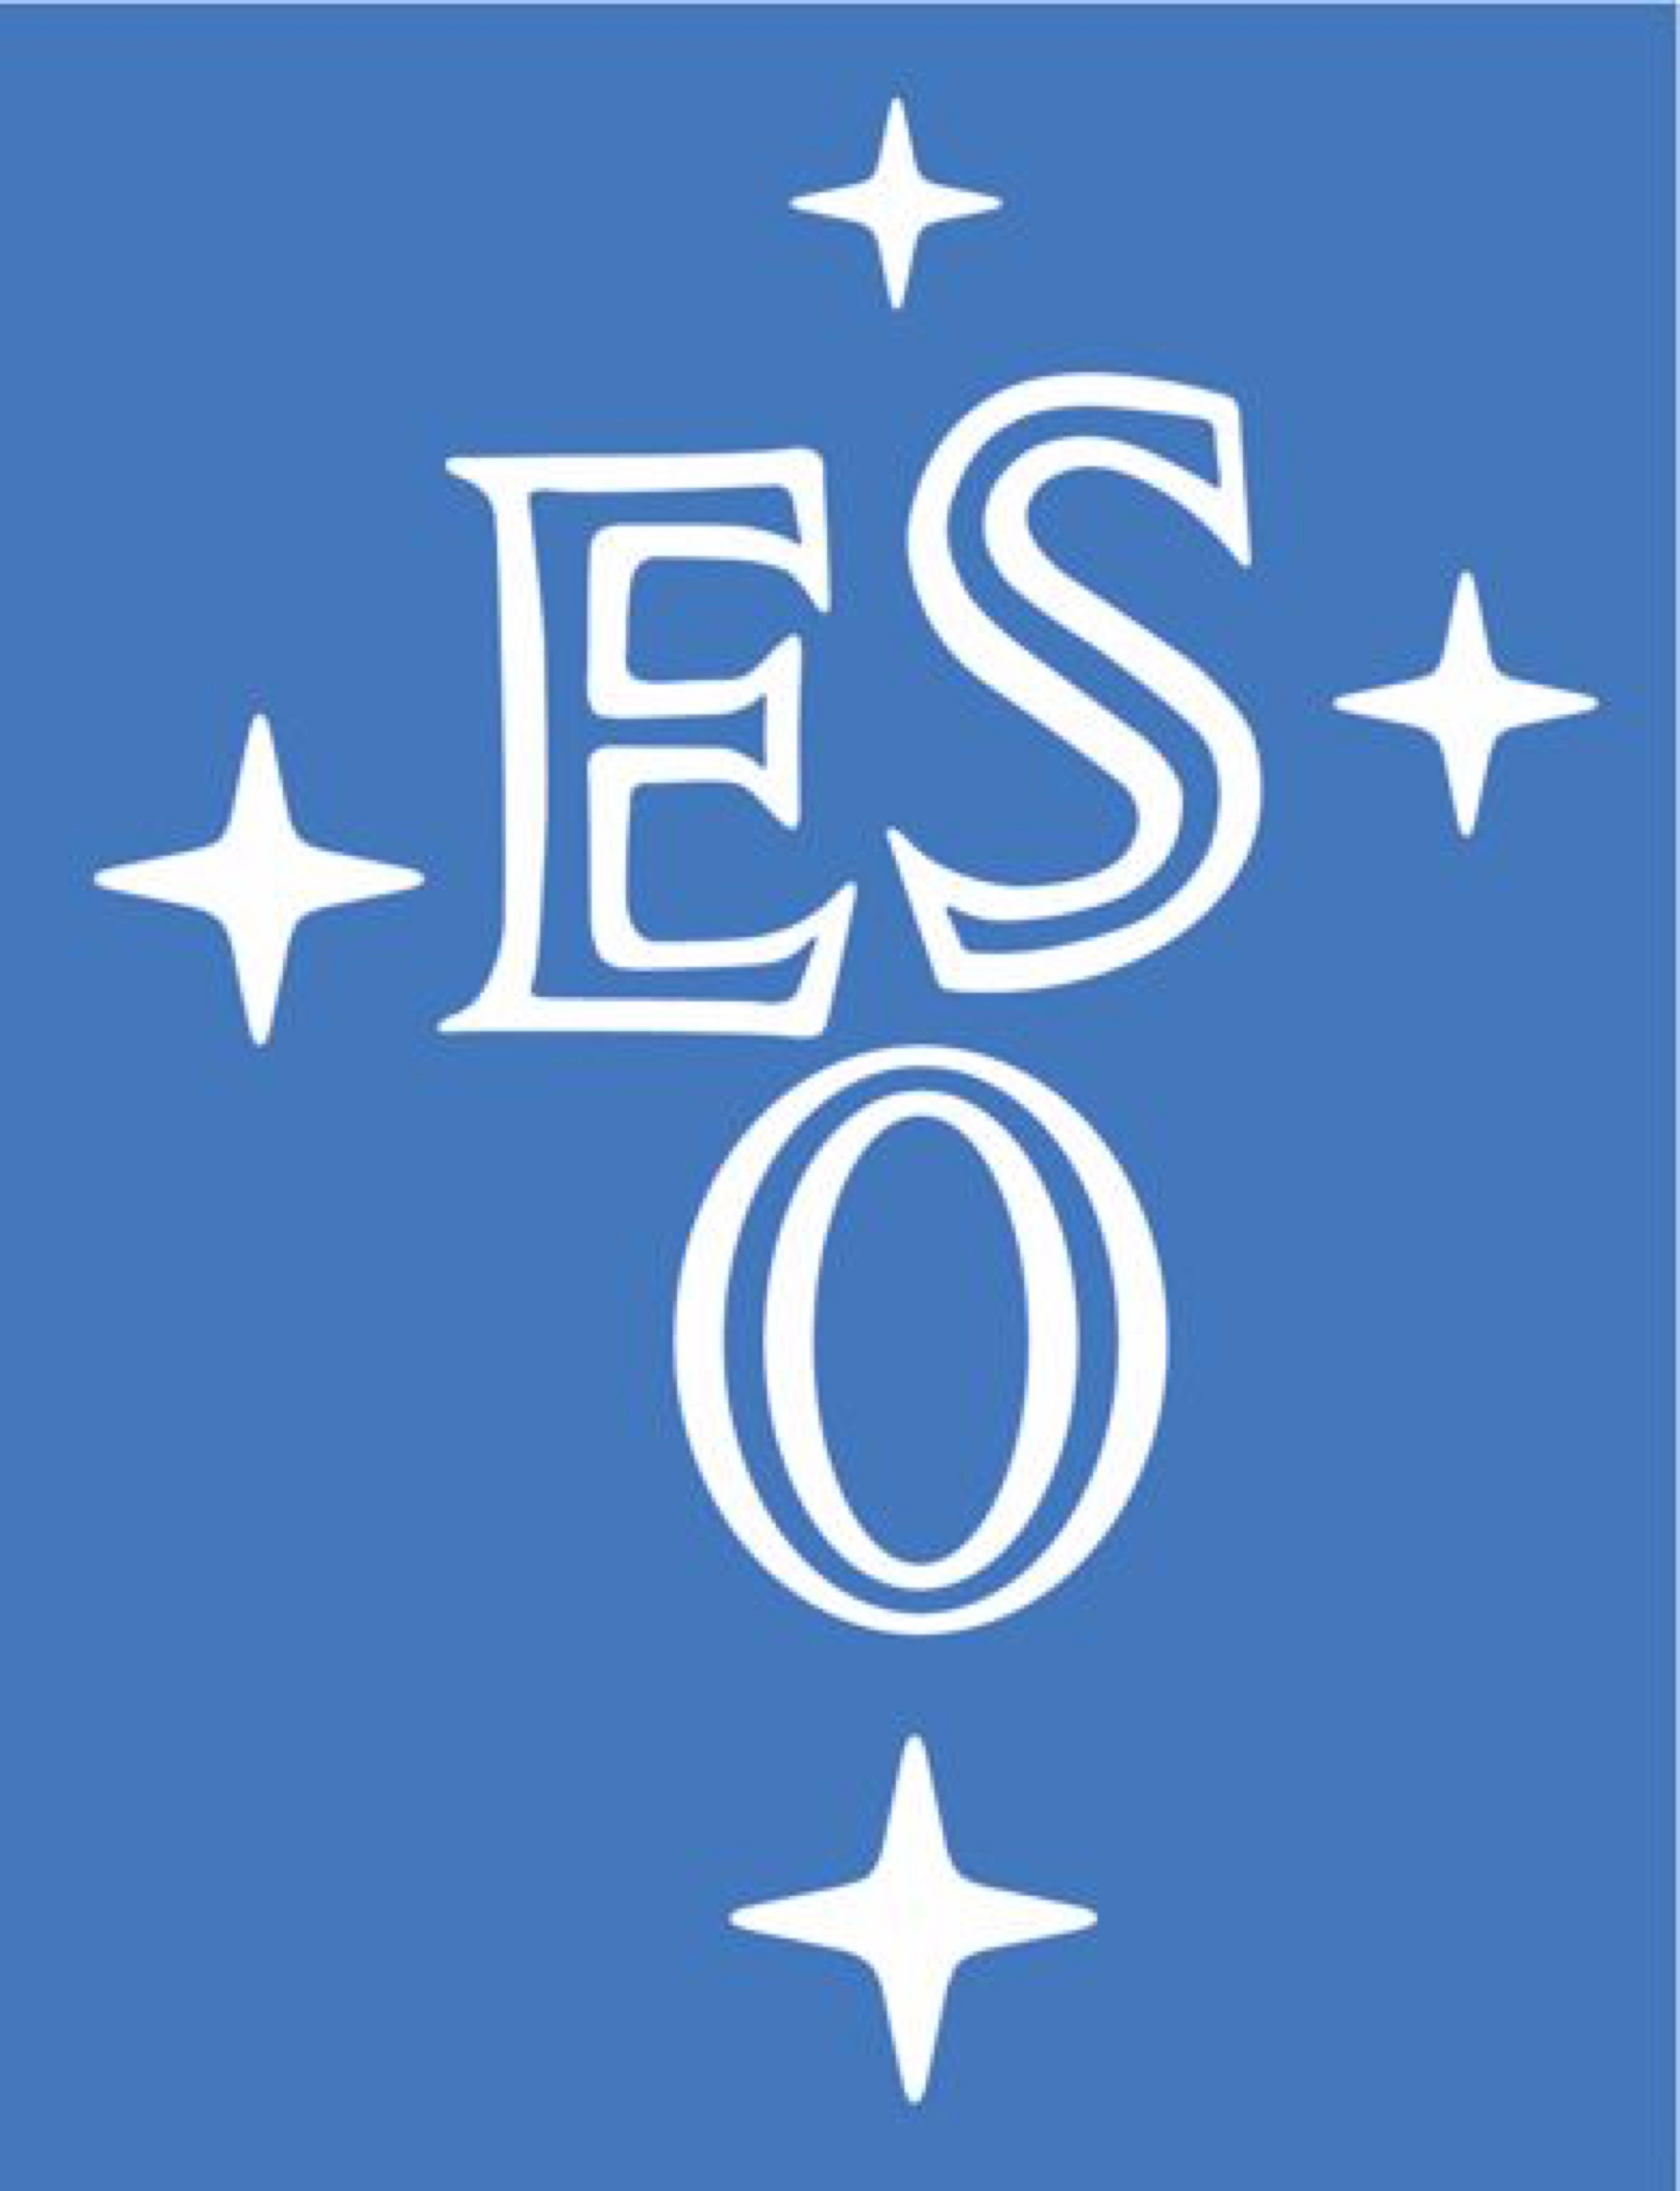 ESO - European Southern Observatory - Европейская южная обсерватория